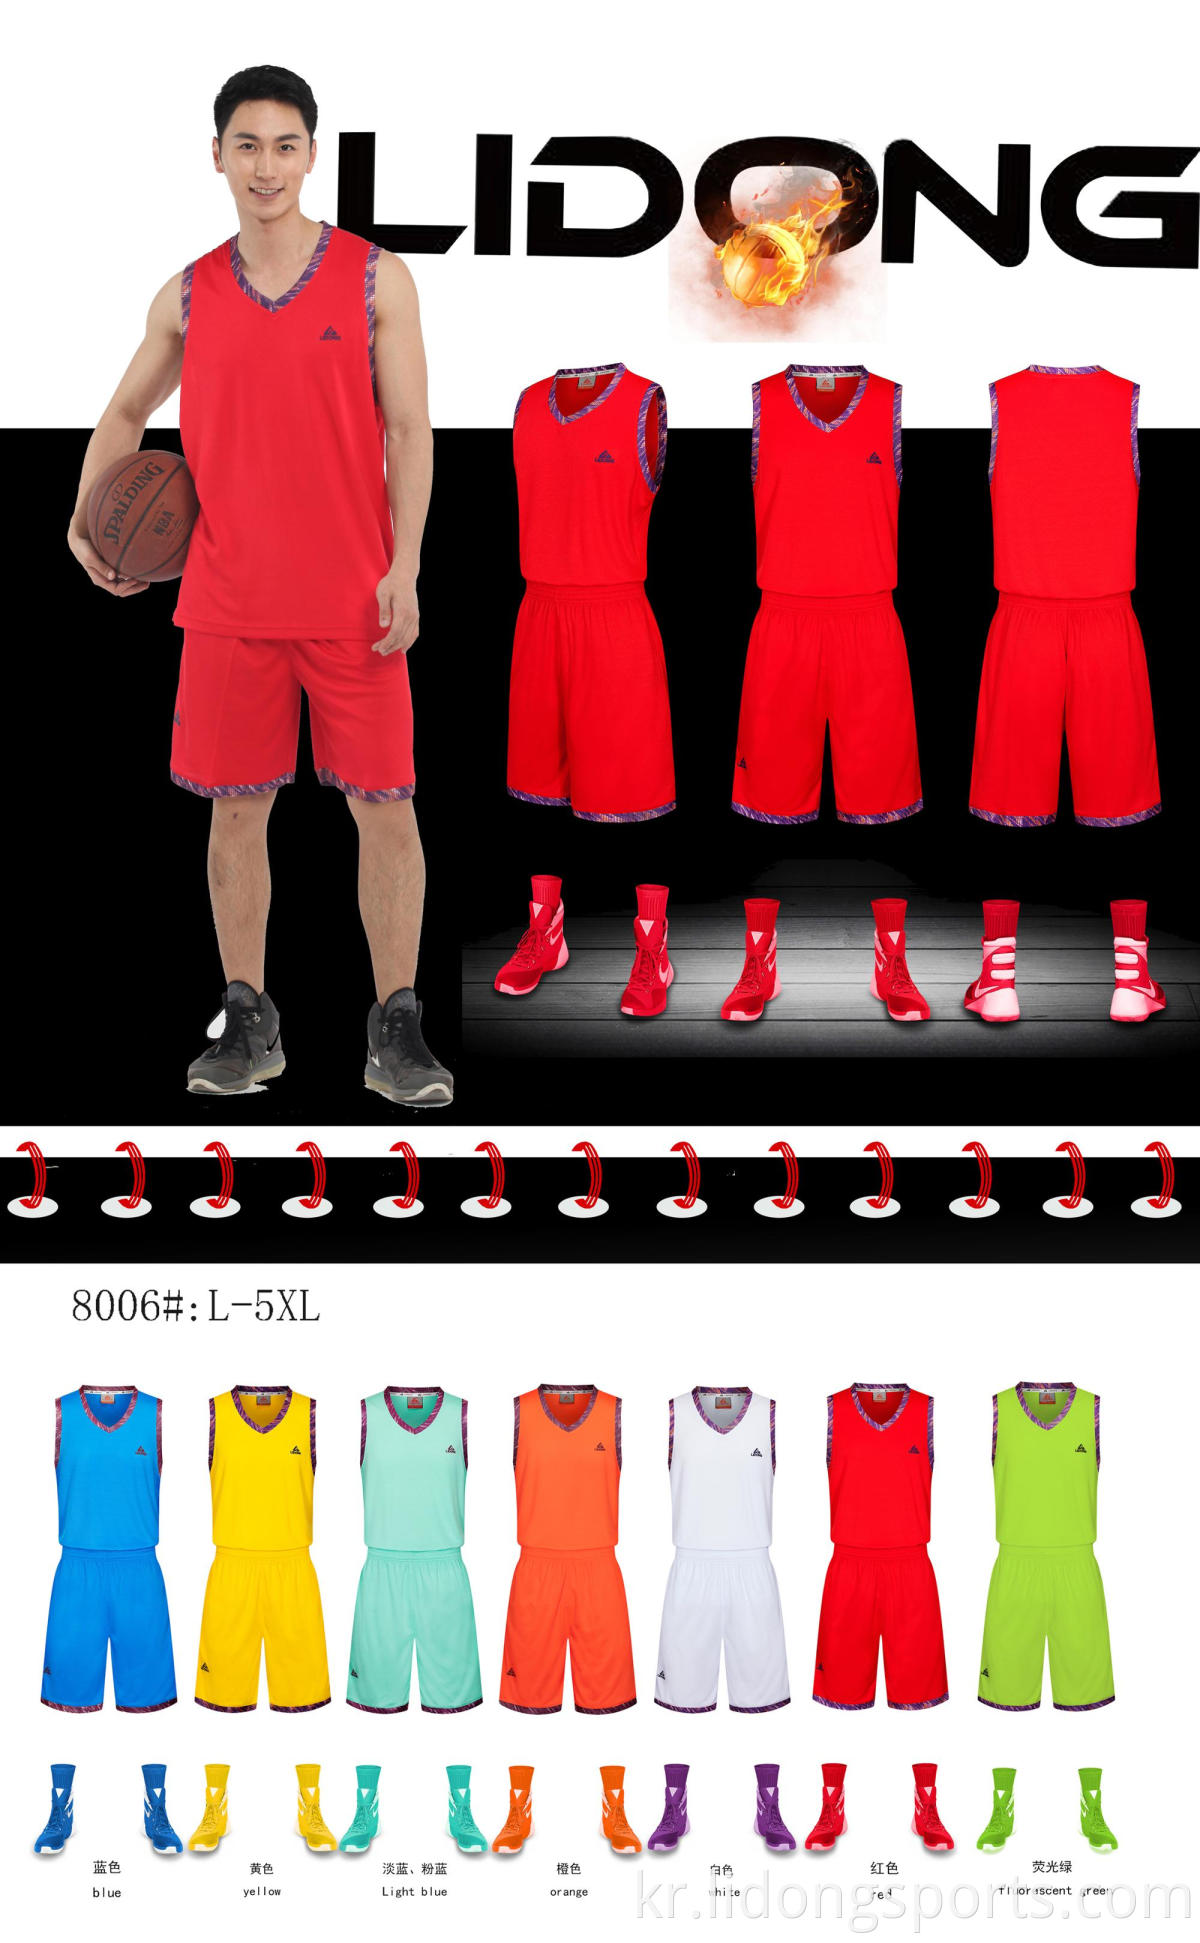 최신 농구 저지 디자인 2021 도매 블랭크 커스텀 농구 유니폼